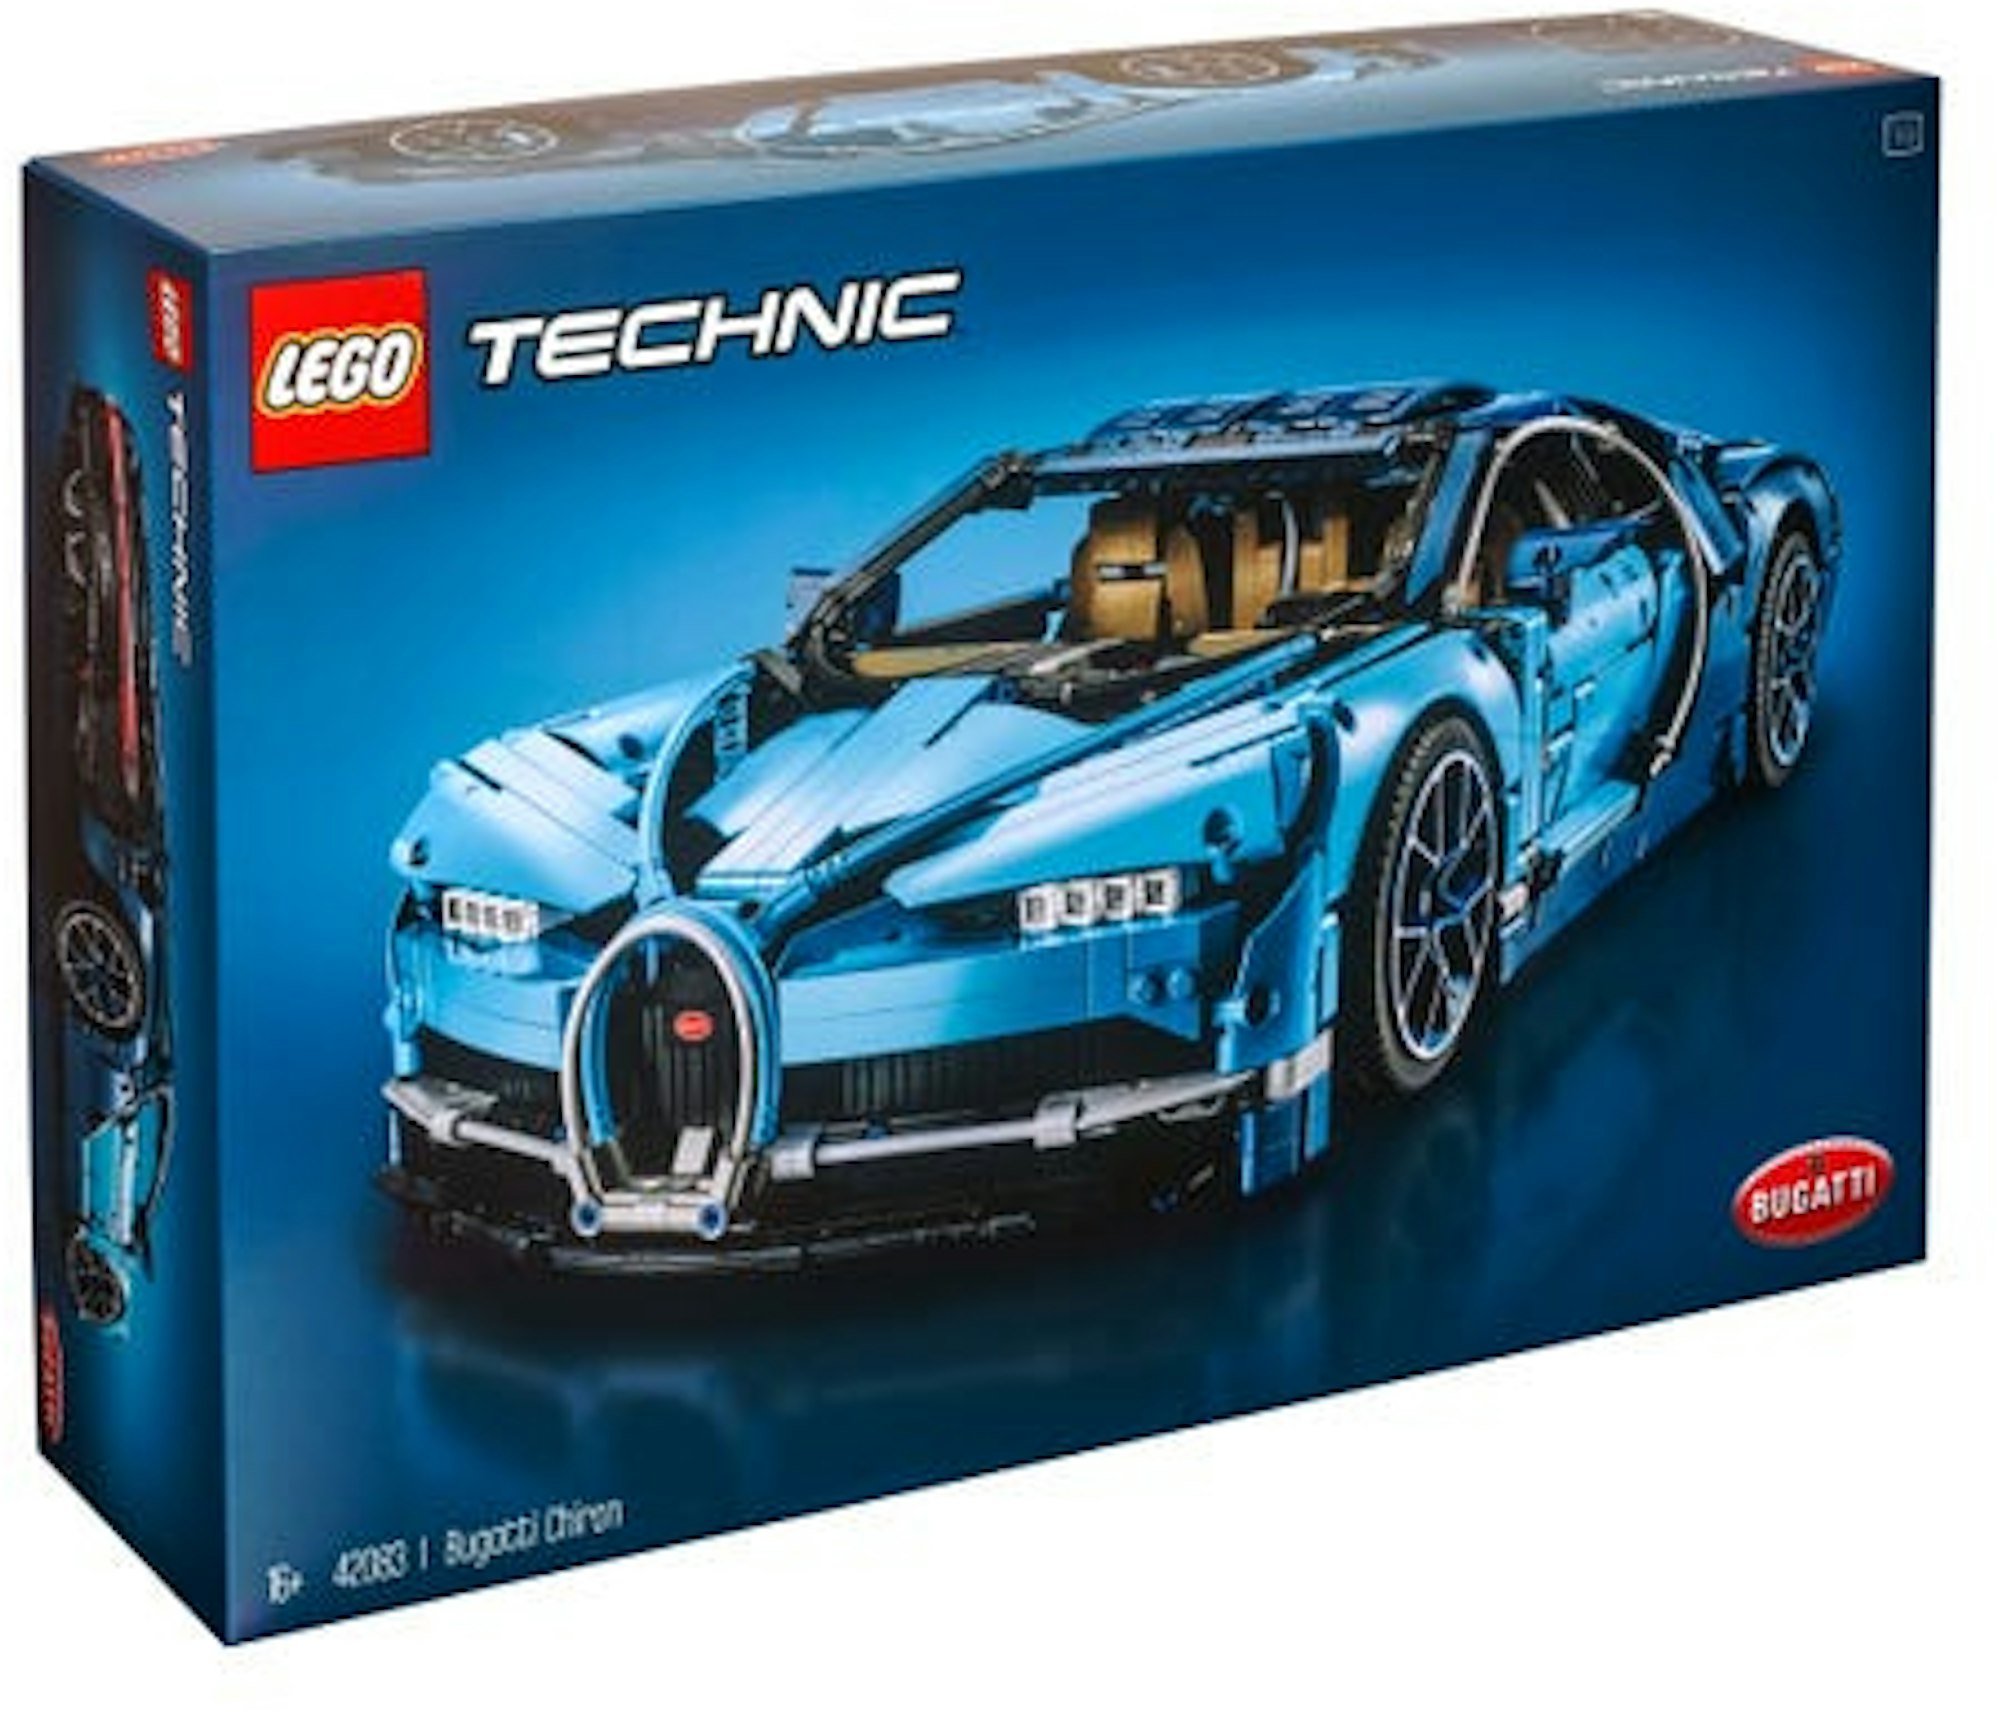 LEGO Technic Bugatti Chiron Set US